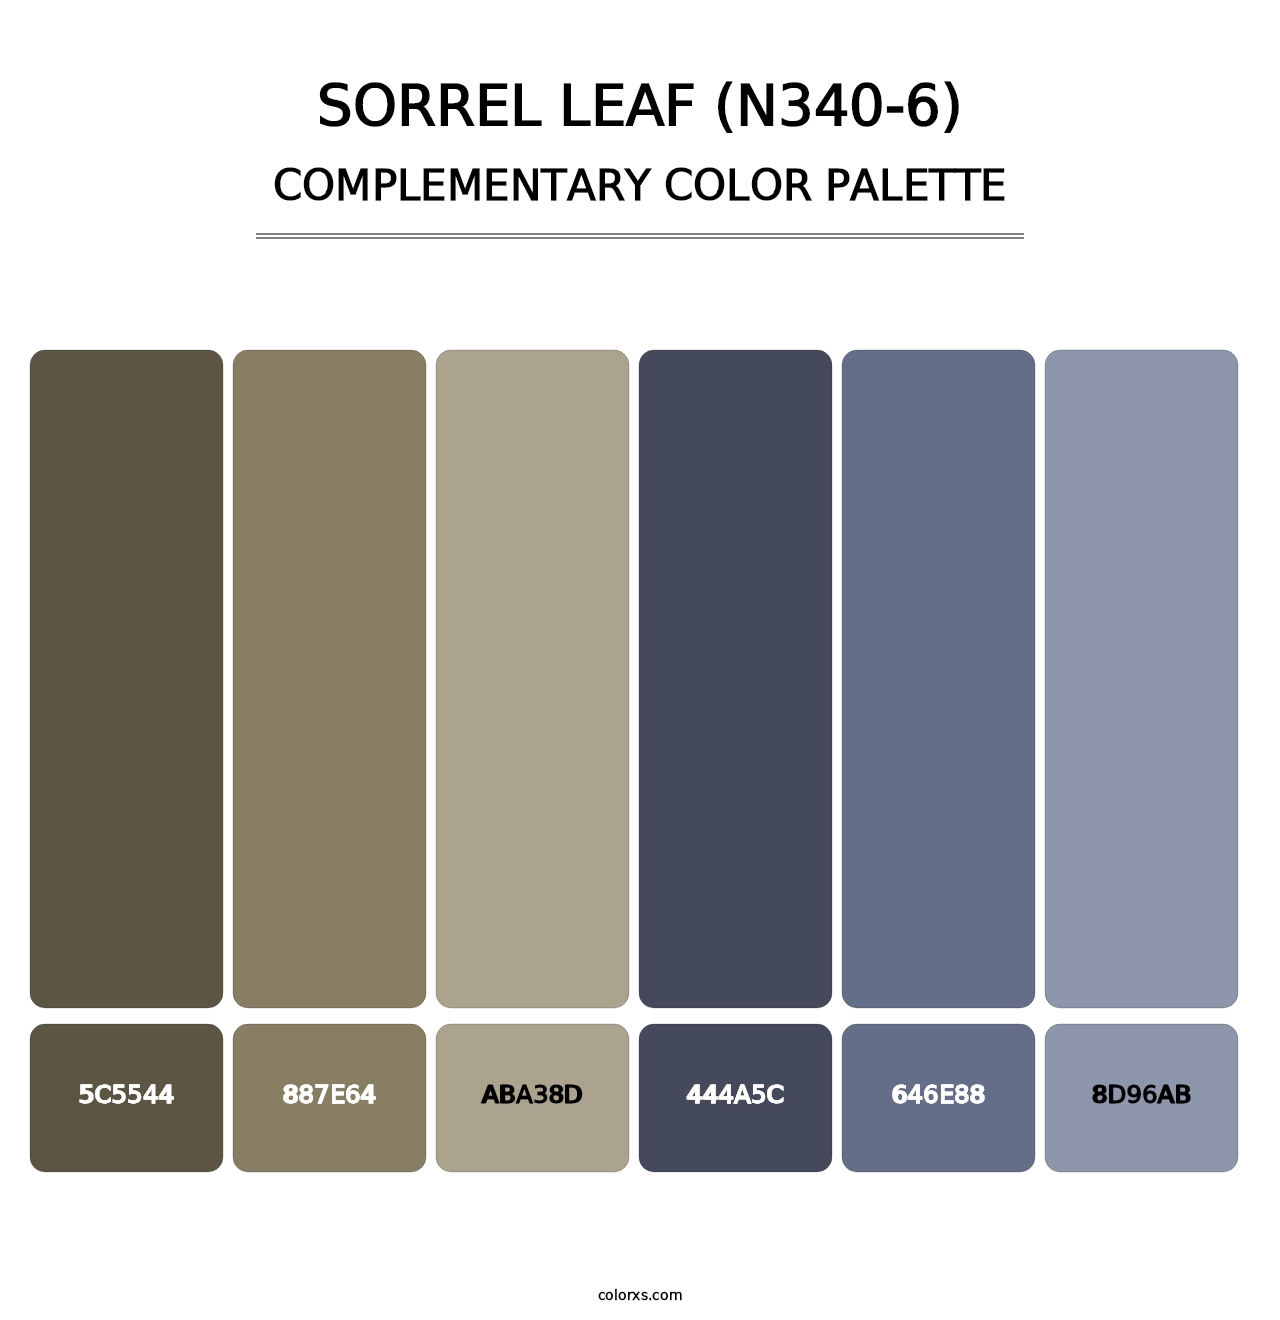 Sorrel Leaf (N340-6) - Complementary Color Palette